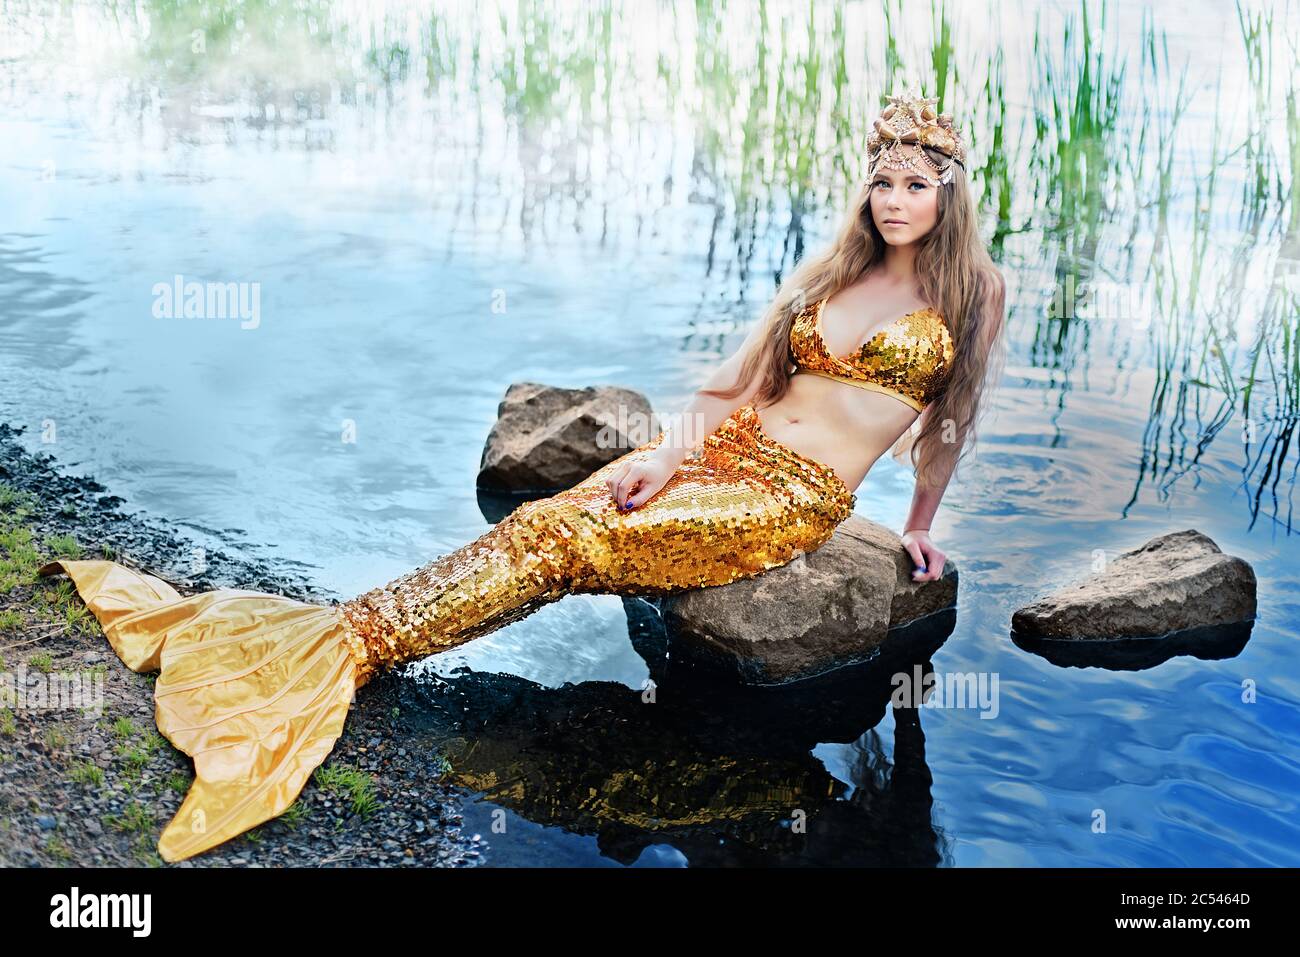 Fantasy donna vera sirena mito dea del mare con coda dorata seduta